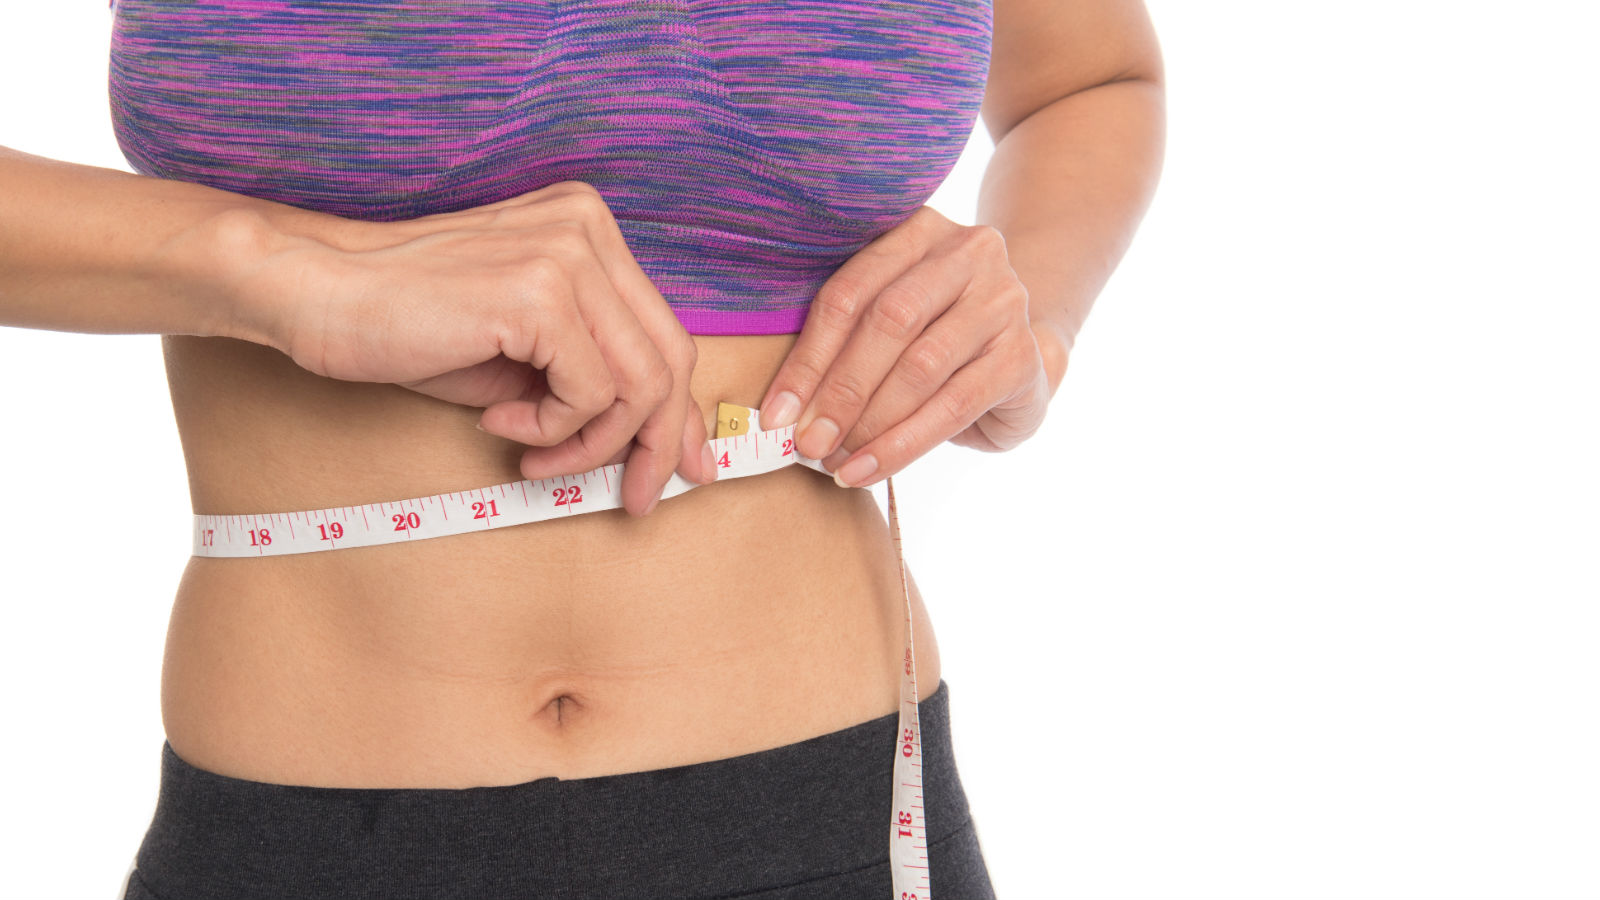 Trucos sencillos para perder grasa abdominal avalados por la ciencia